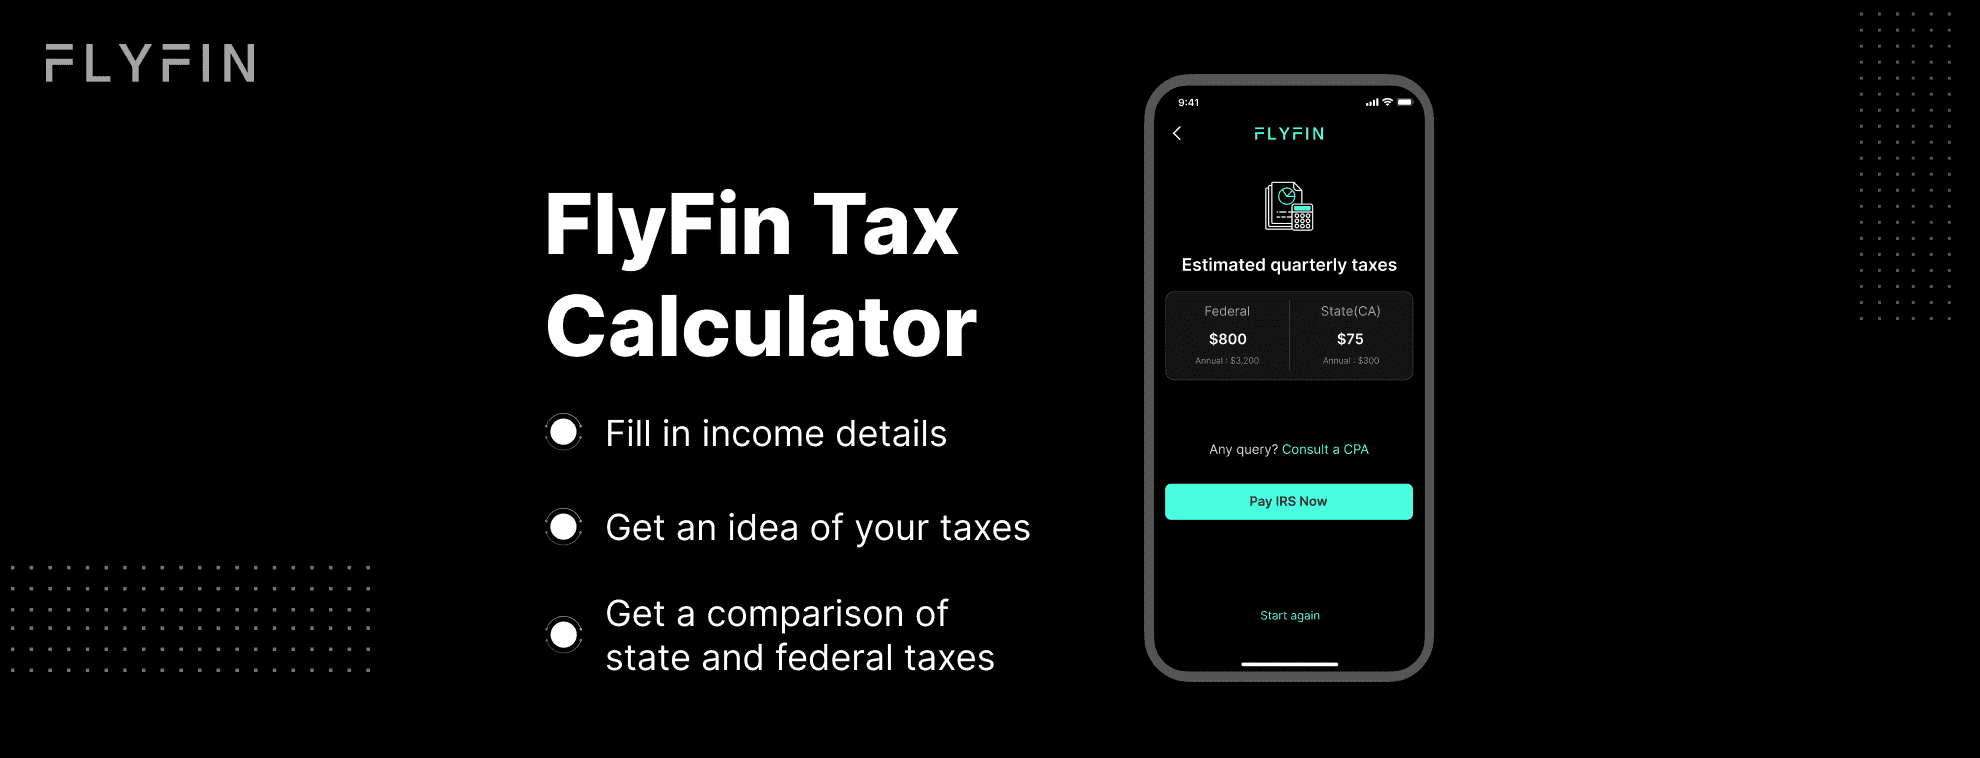 Ask A CPA Flyfin Tax Calculator